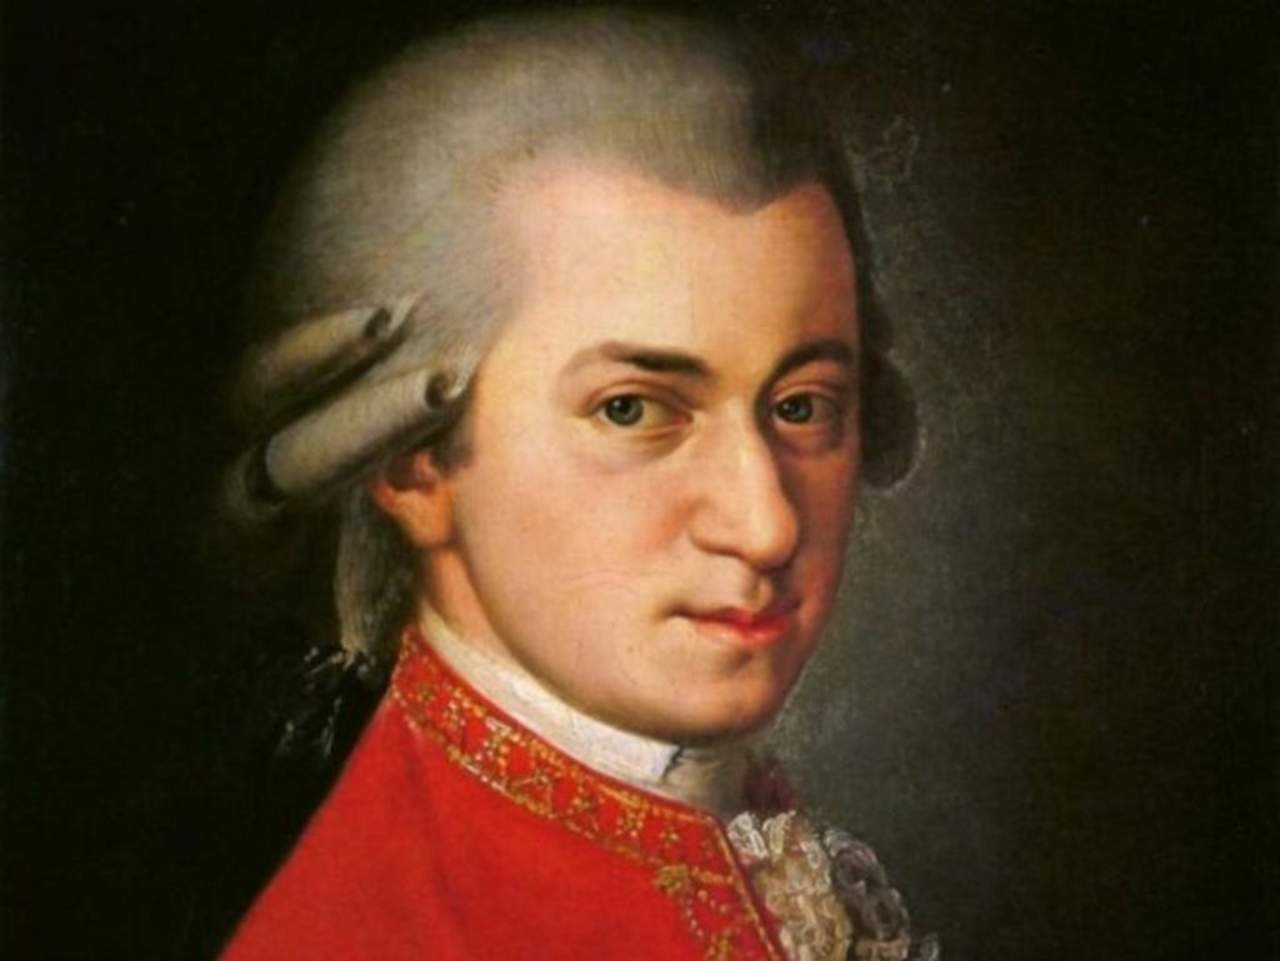 Recordado al cumplirse el 225 aniversario de su muerte, el llamado “Genio de Salzburgo” vive en el repertorio de las más importantes salas de concierto del mundo. (ESPECIAL)